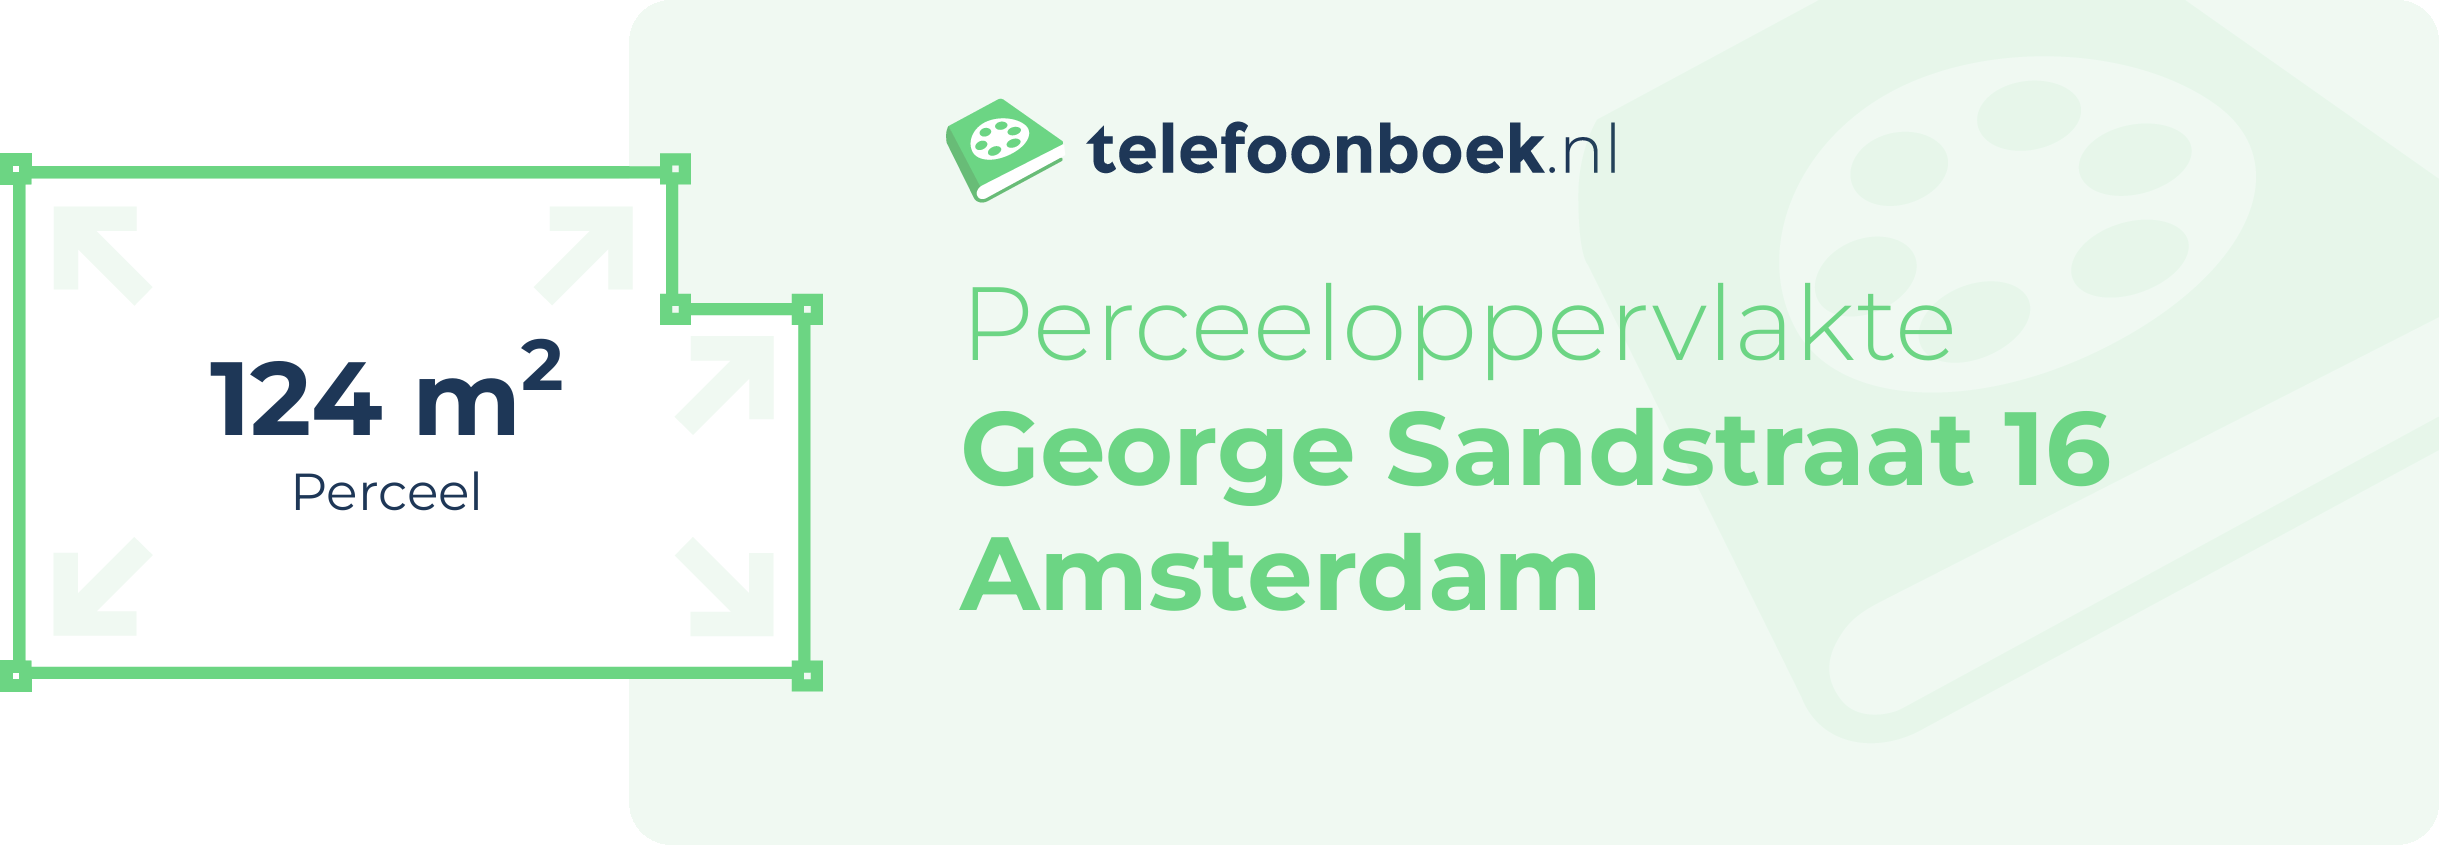 Perceeloppervlakte George Sandstraat 16 Amsterdam